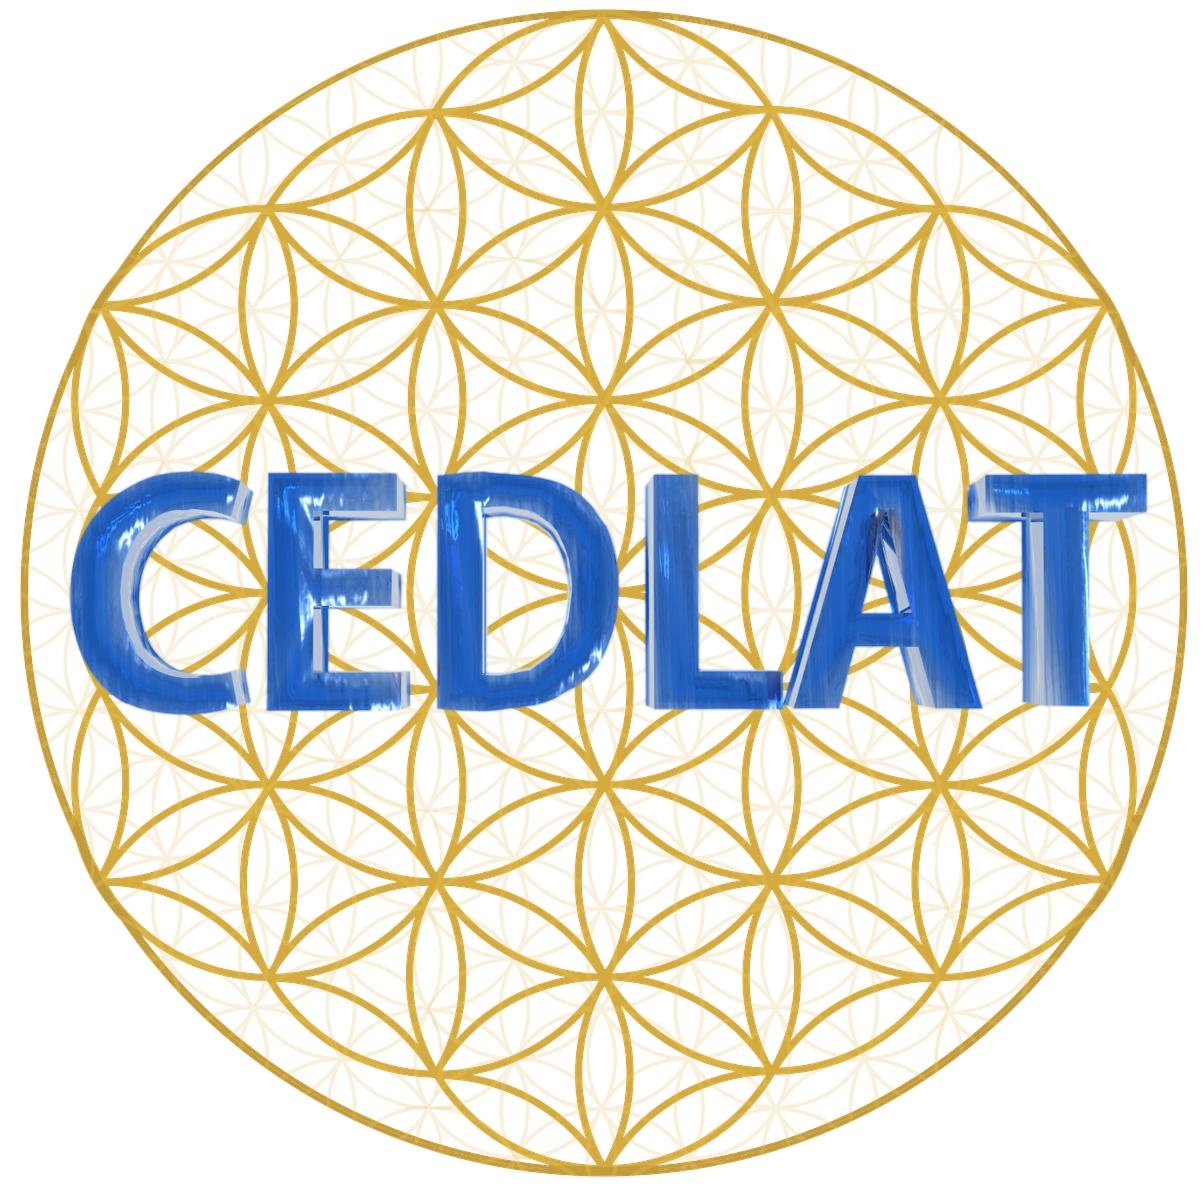 CEDLAT promueve un tipo de sociedad diferente a la actual, una «Sociedad Holográfica» basa en un modelo escalonado del sistema político Holográfico Andromedano.